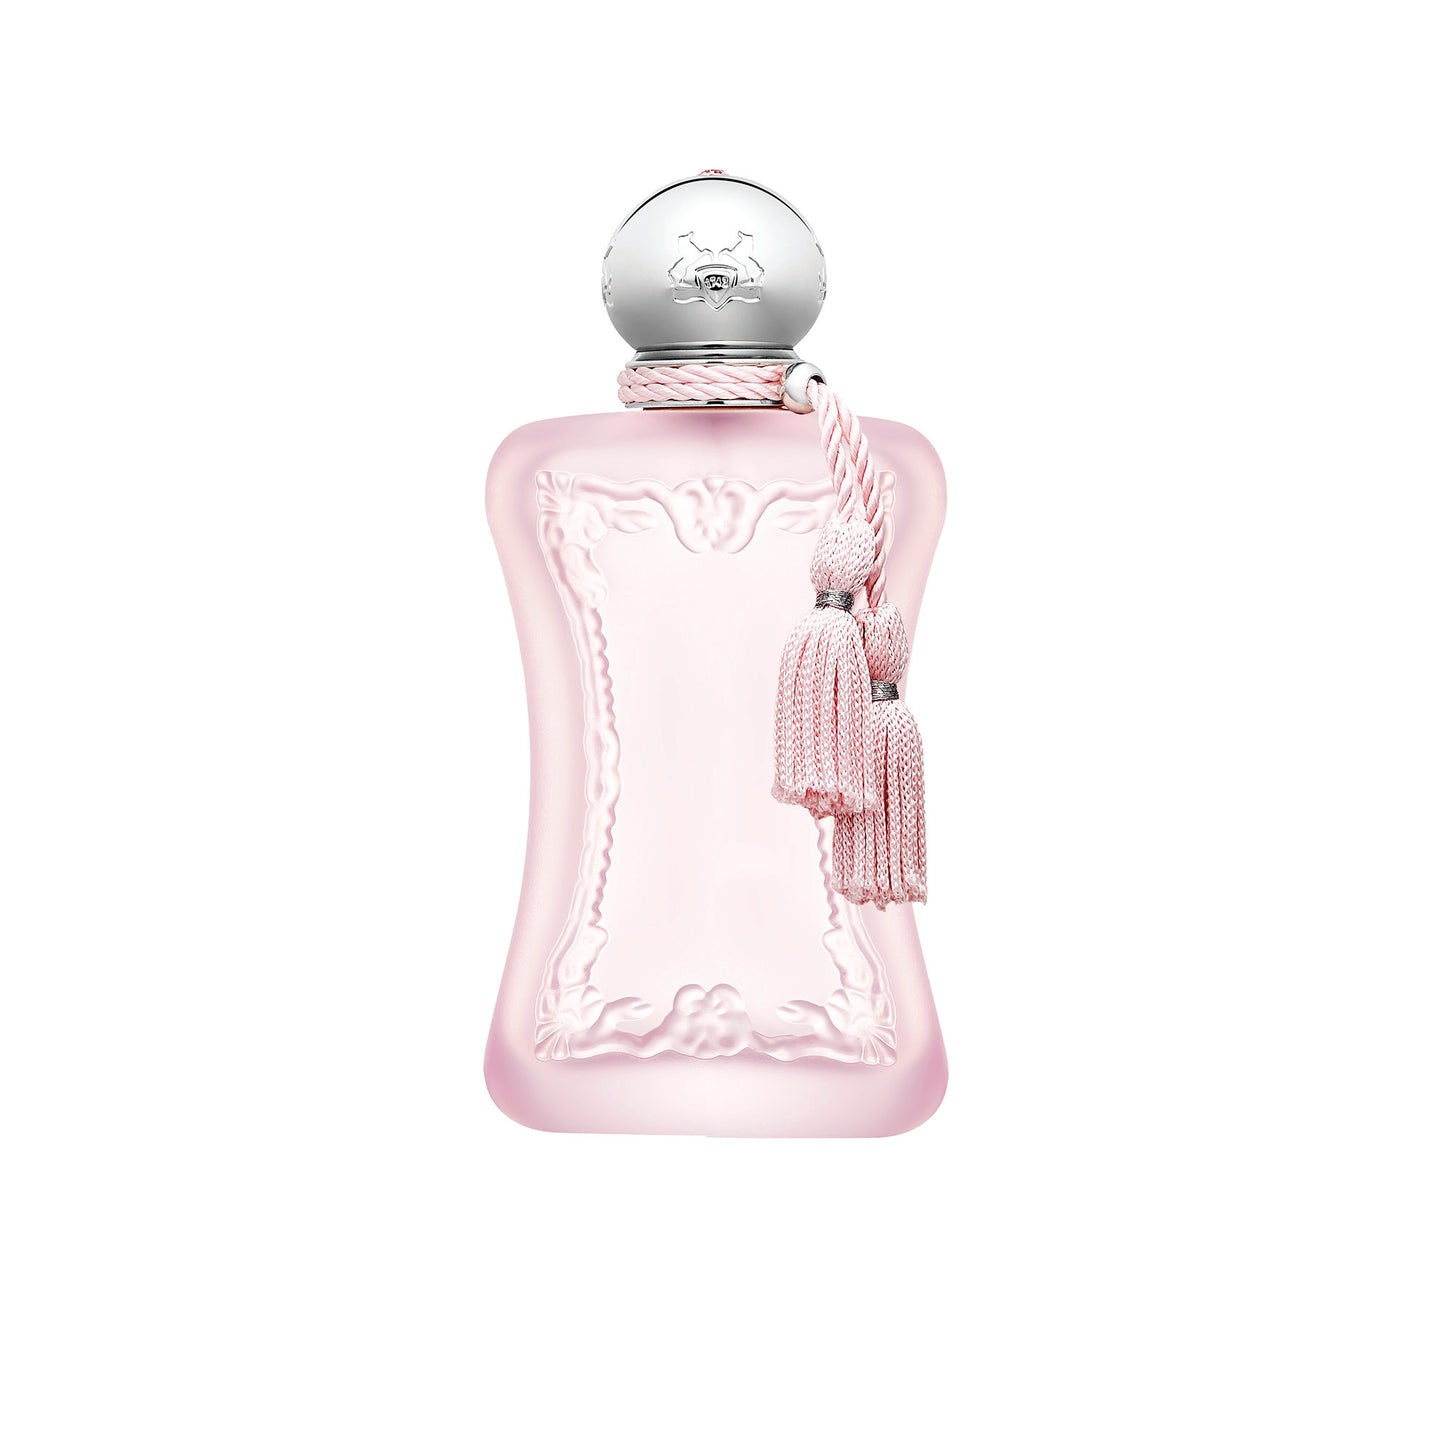 DELINA LA ROSEE 1.2ml Sample Vial - Eau de Parfum